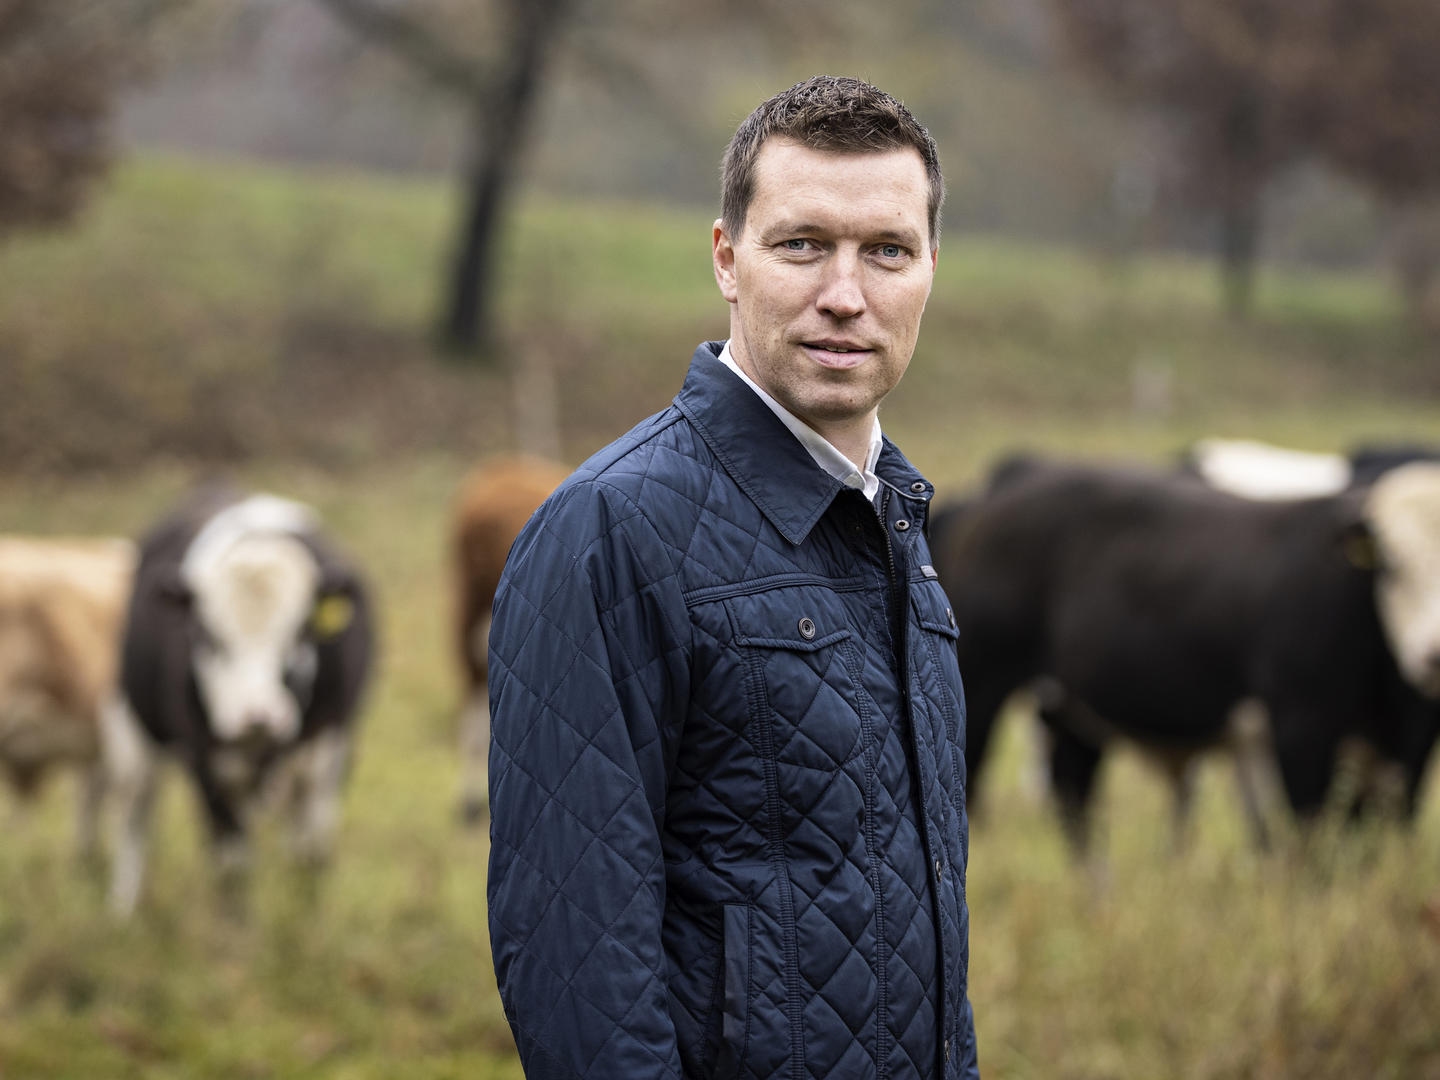 Der er både muligheder og udfordringer i vente for landbruget, hvor formand Søren Søndergaard ser frem mod det politiske landskab for det kommende år. | Foto: Niels Hougaard